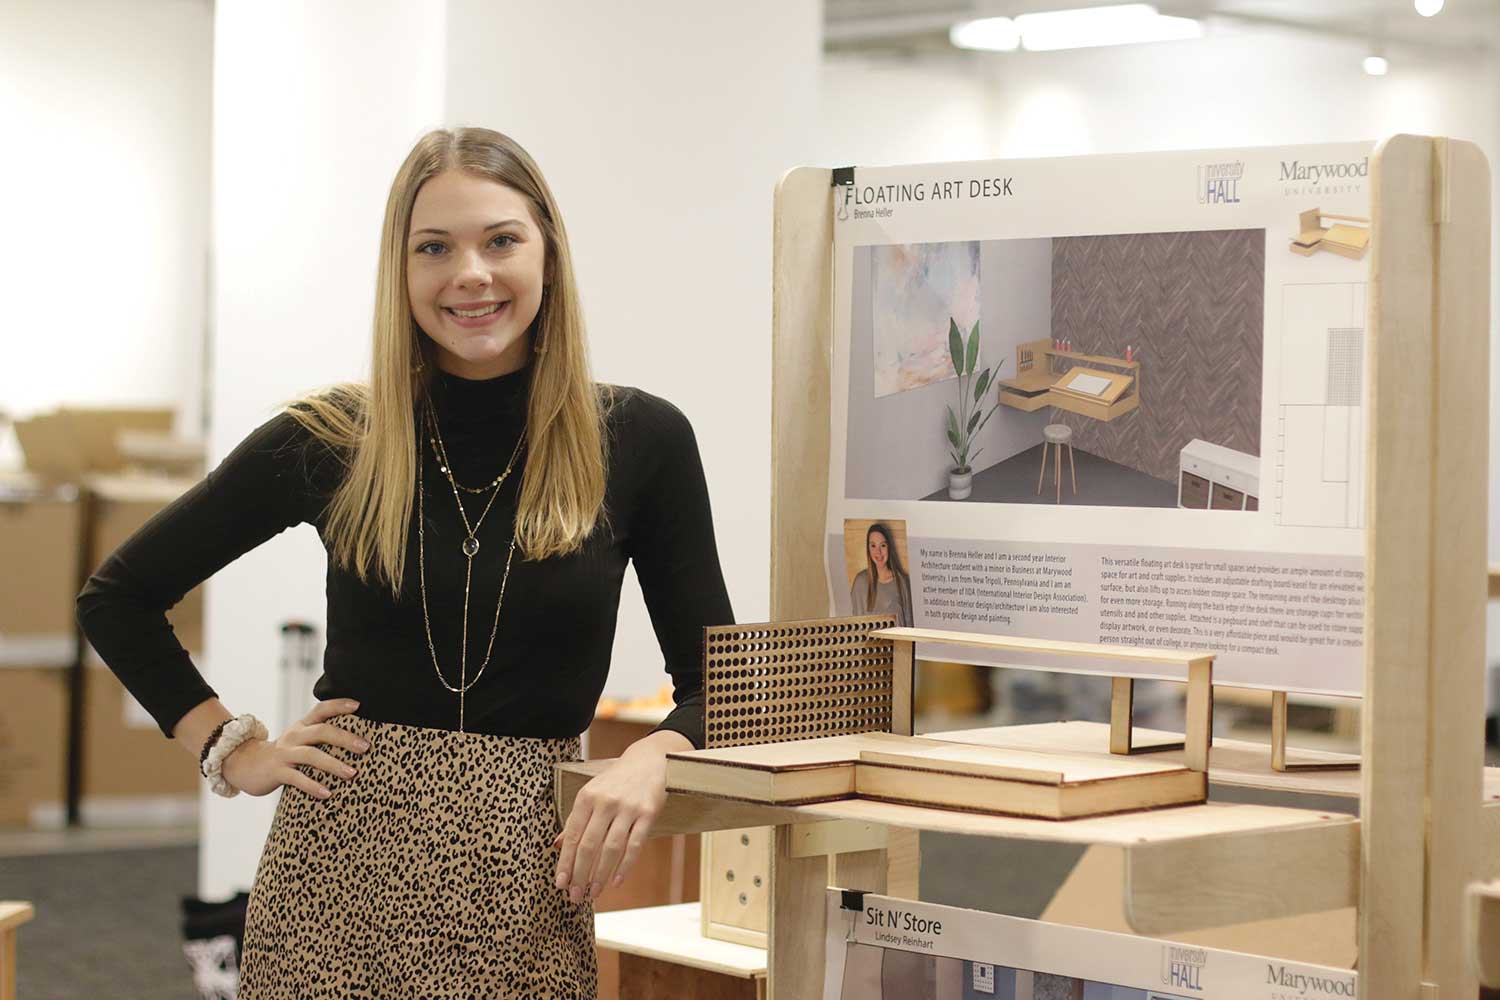 Brenna Heller proudly displaying her floating desk design